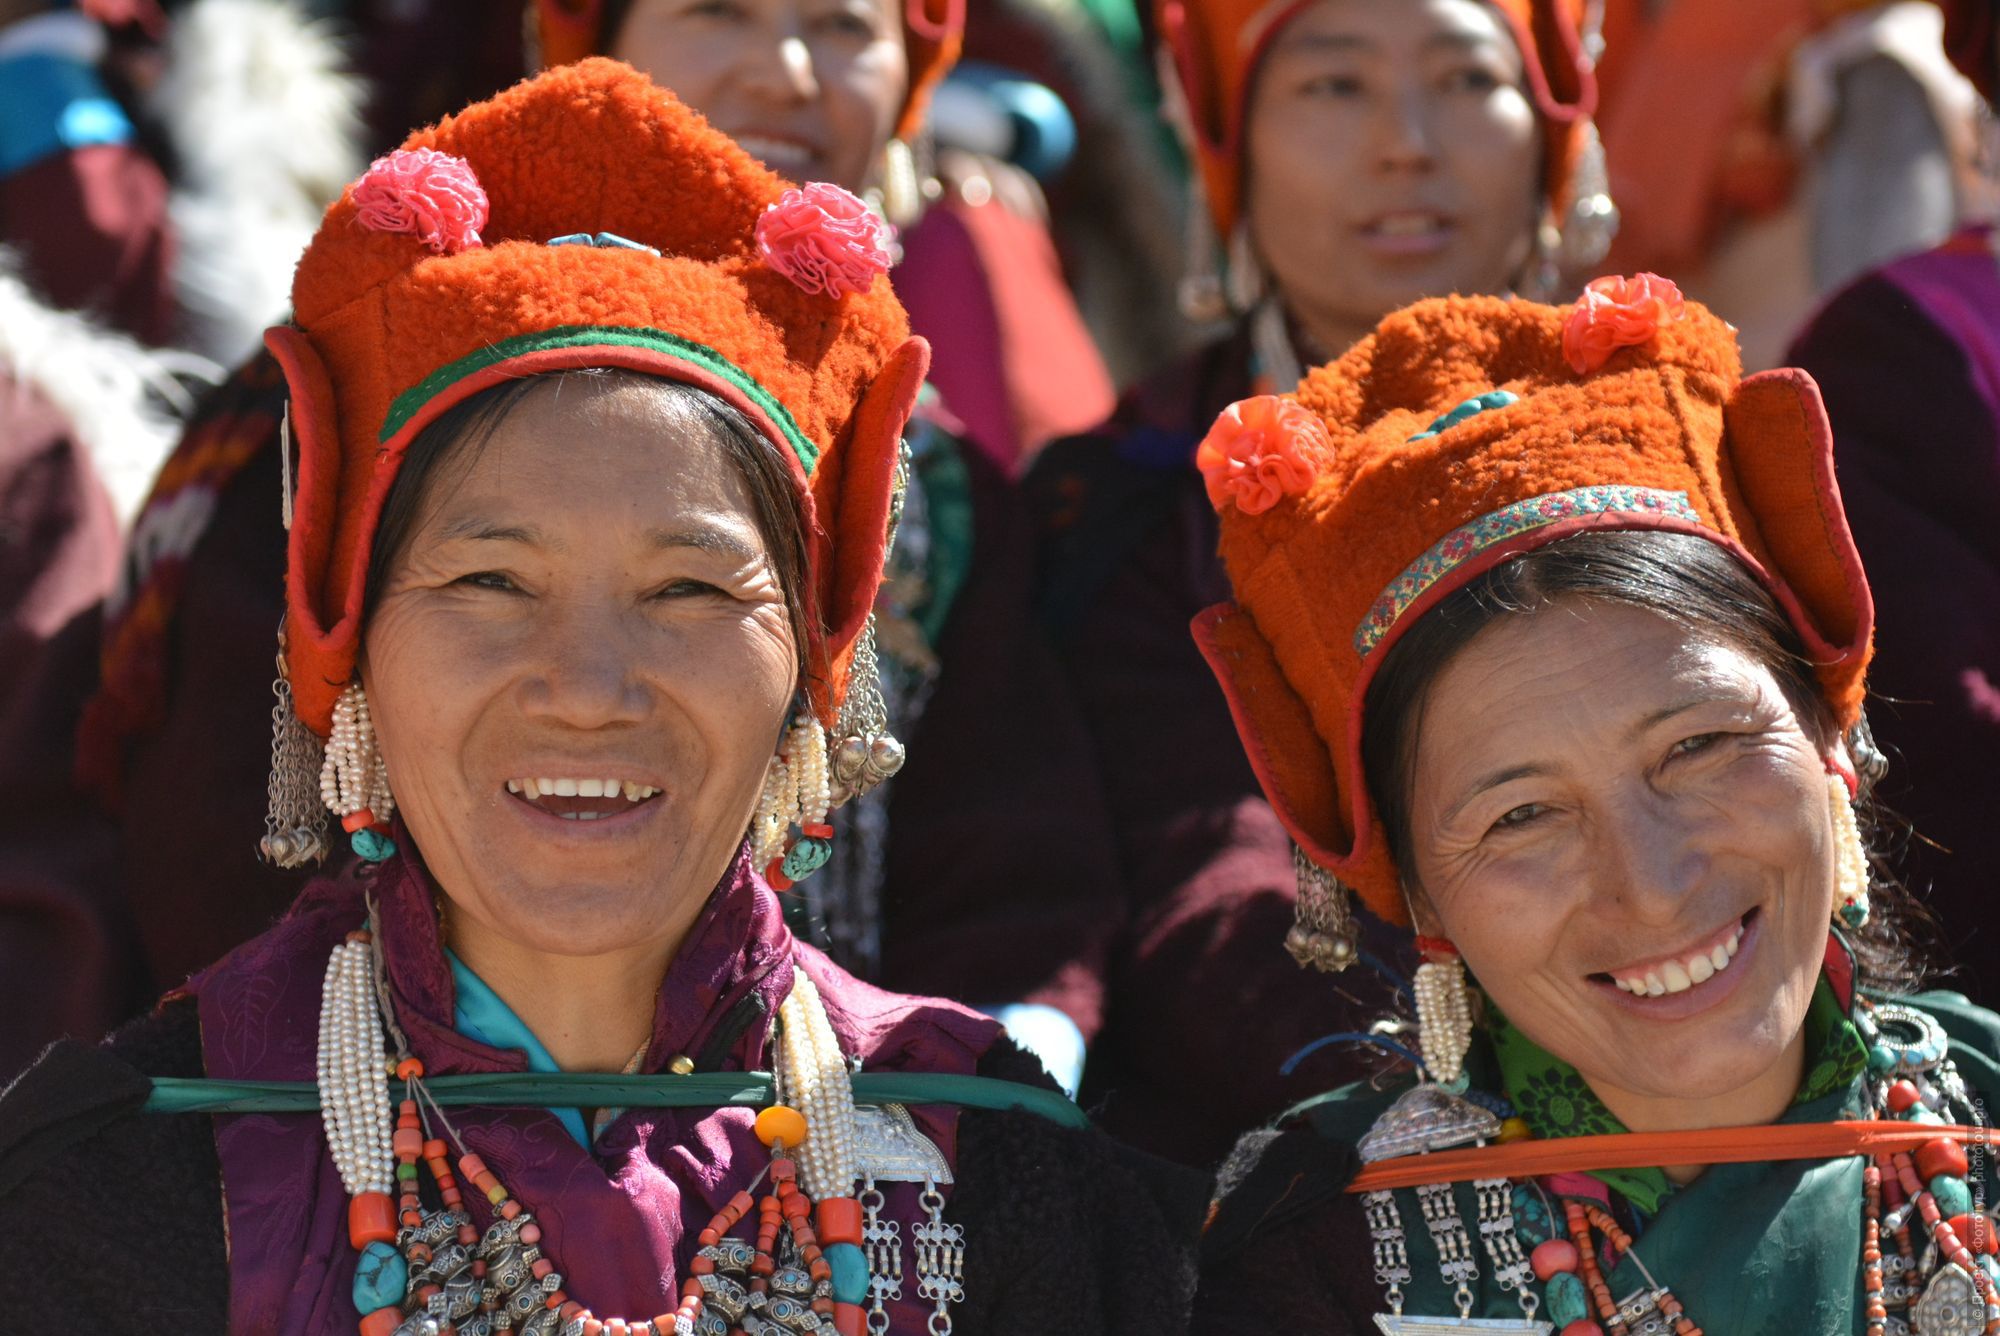 Zanskari women at the Ladakh festival. Budget photo tour Legends of Tibet: Zanskar, September 15 - September 26, 2021.